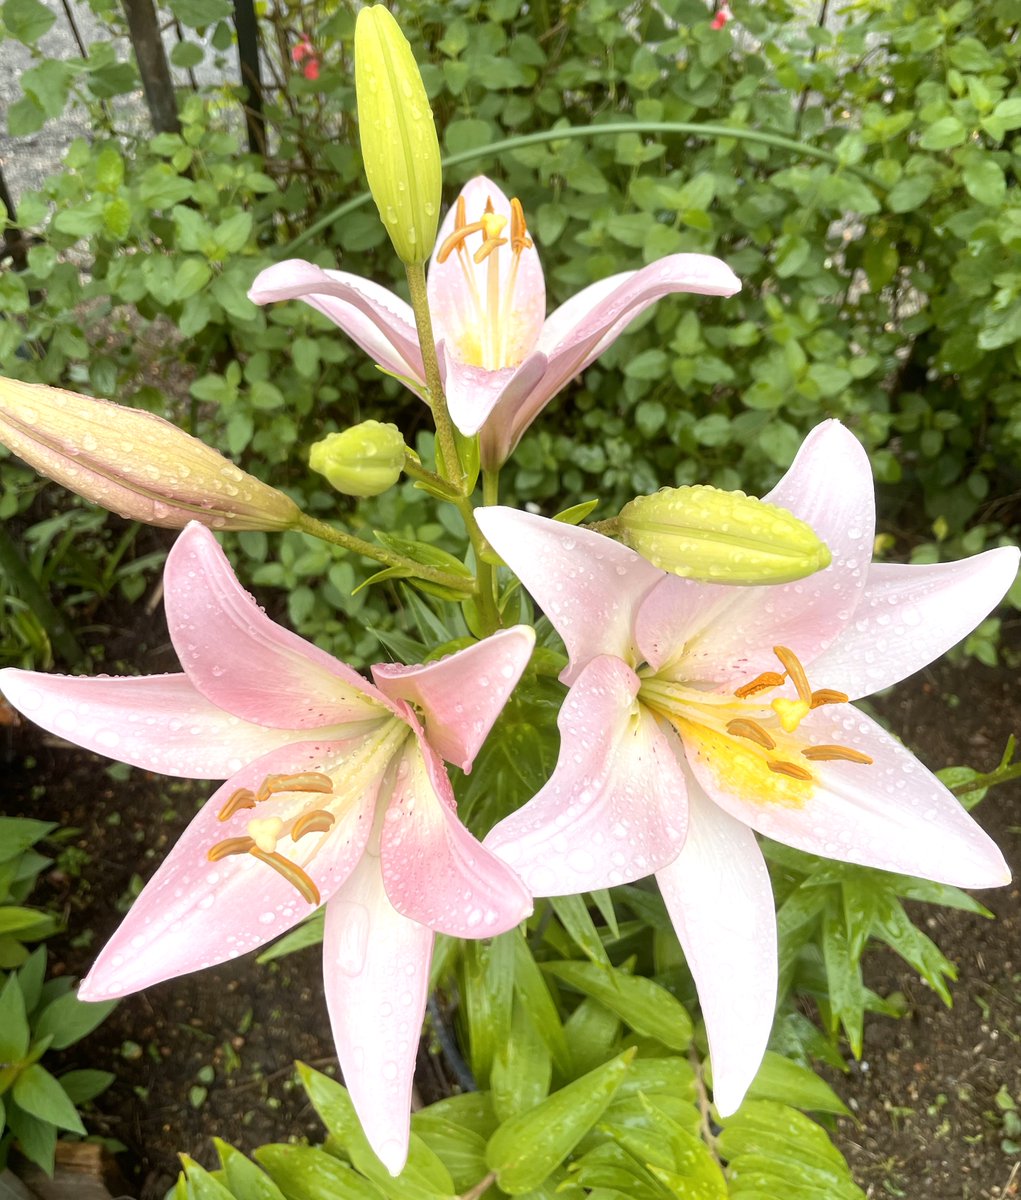 おはようございます
自宅に咲いたピンク色のカサブランカ
今週も宜しくお願いします🌺

#カサブランカ
 #ユリ 
 #TLを花で一杯にしょう